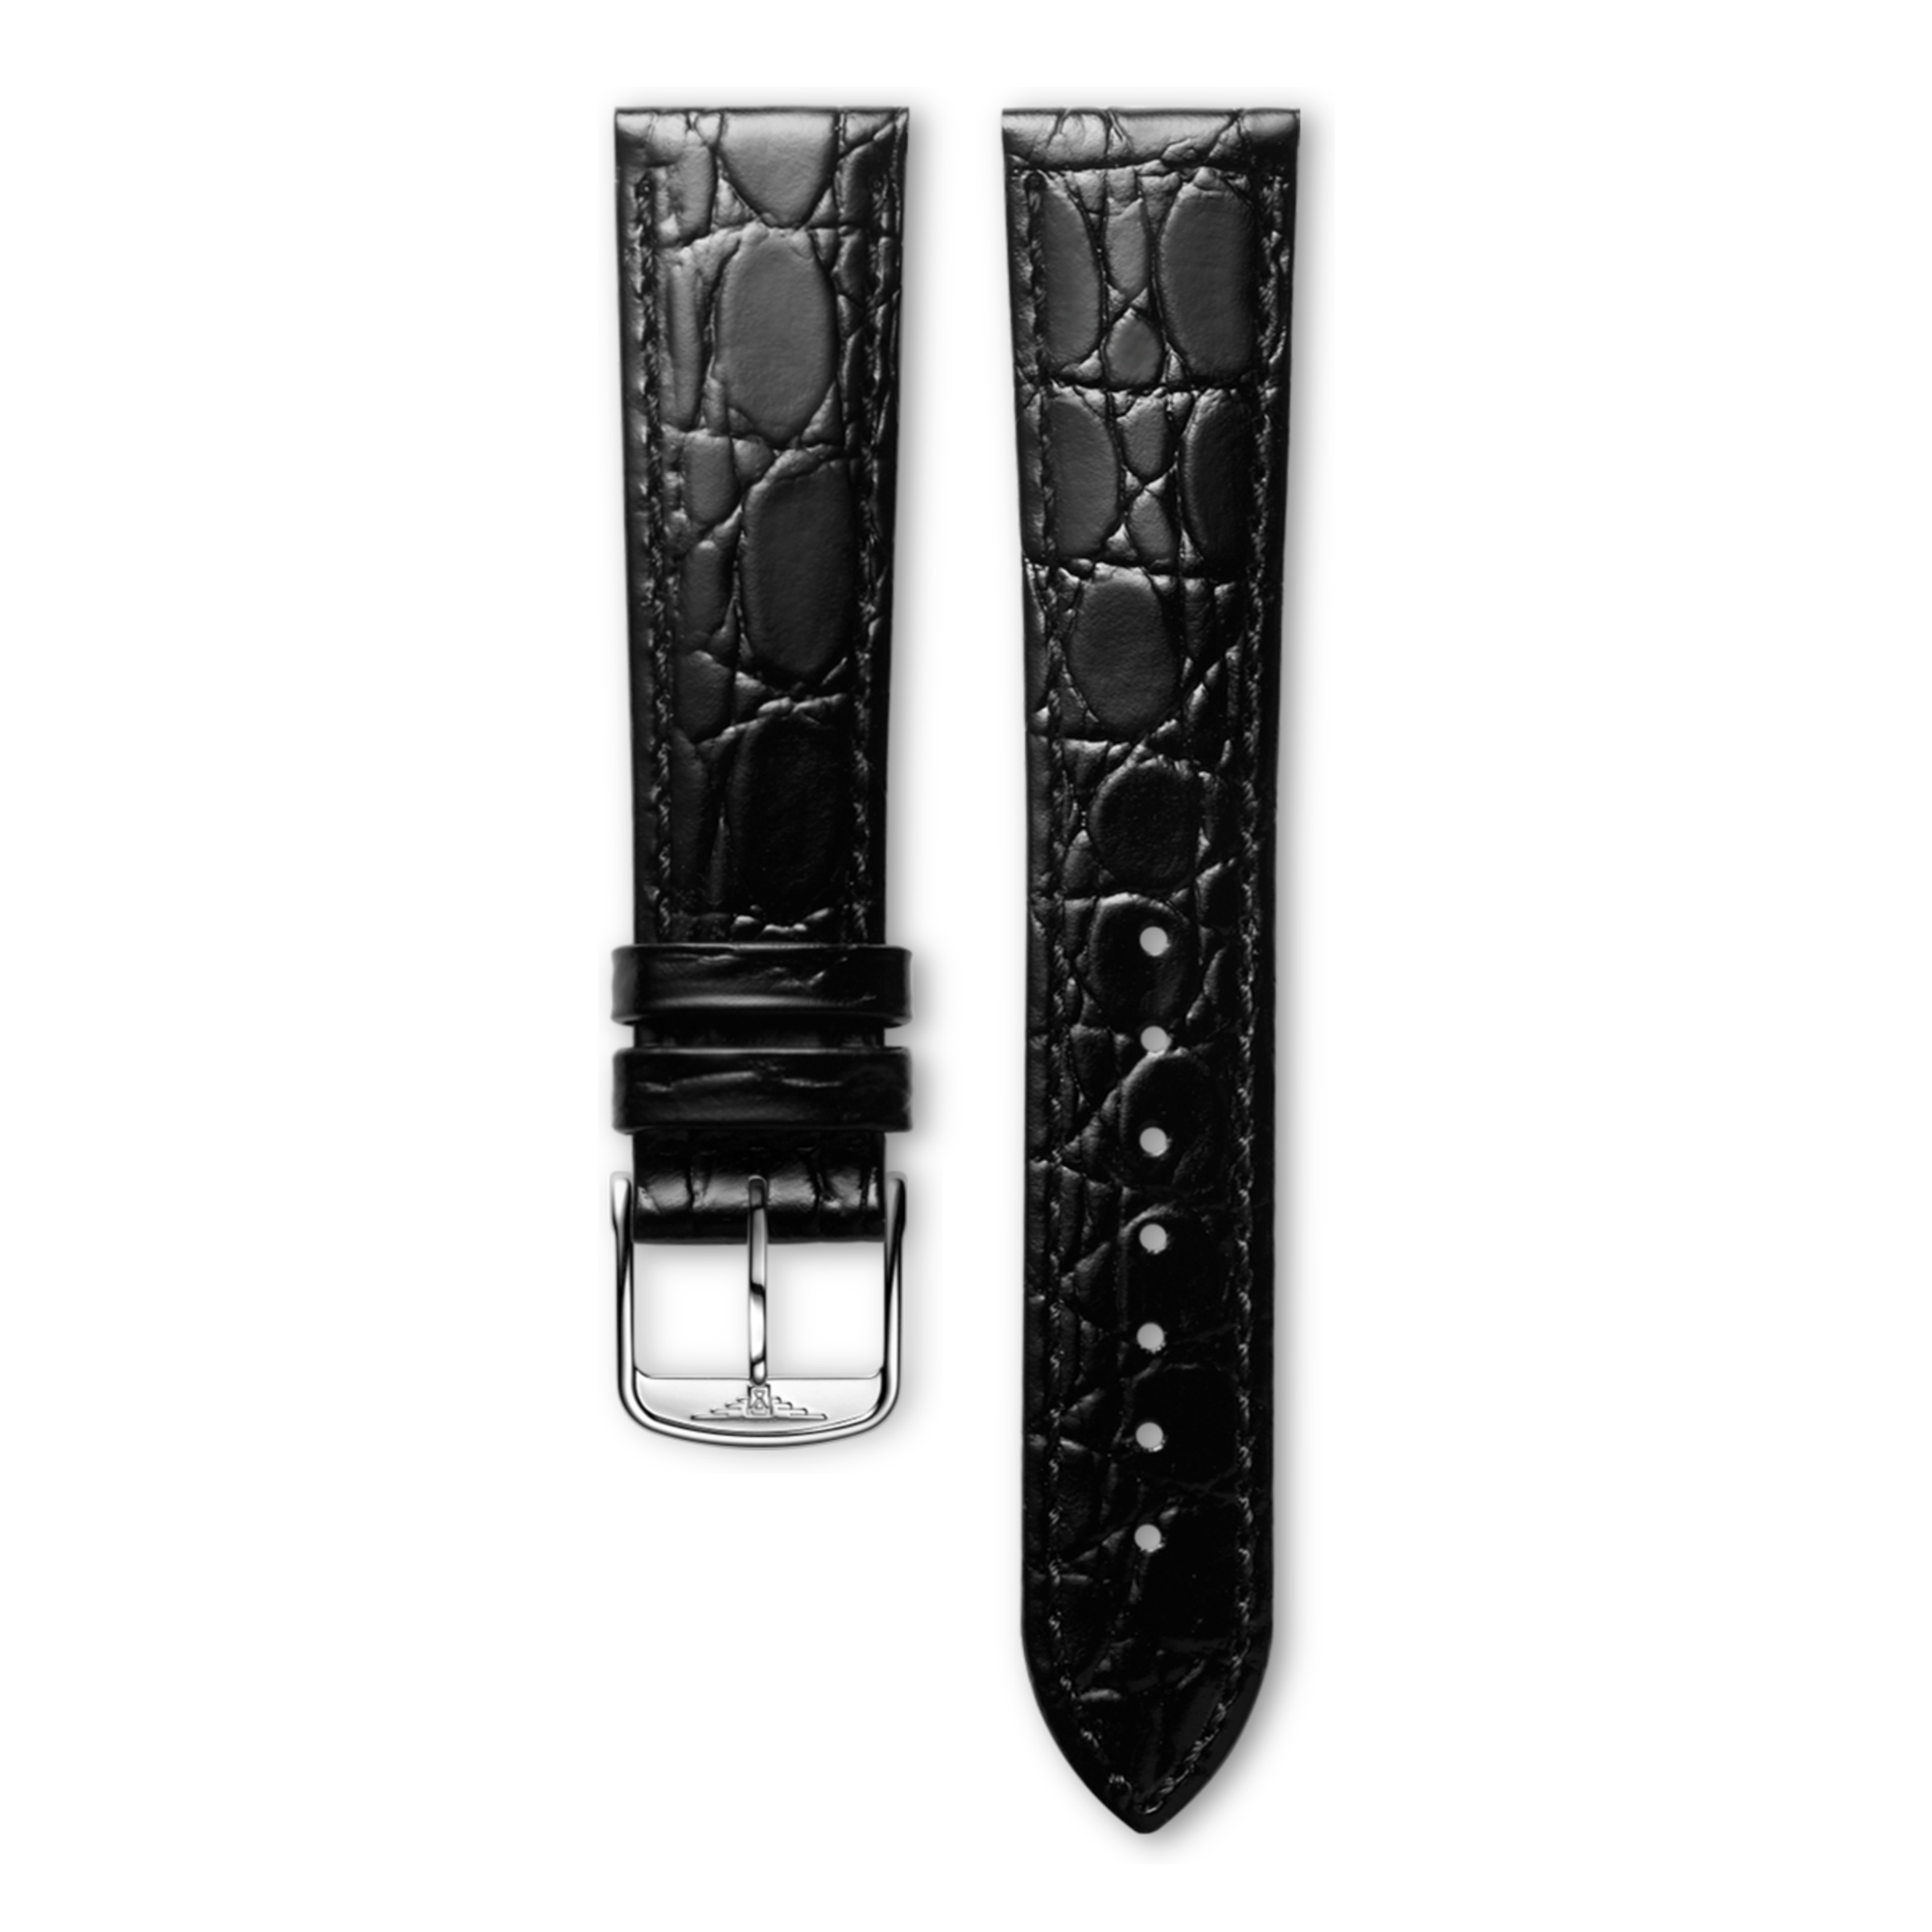 Bright black calf leather strap